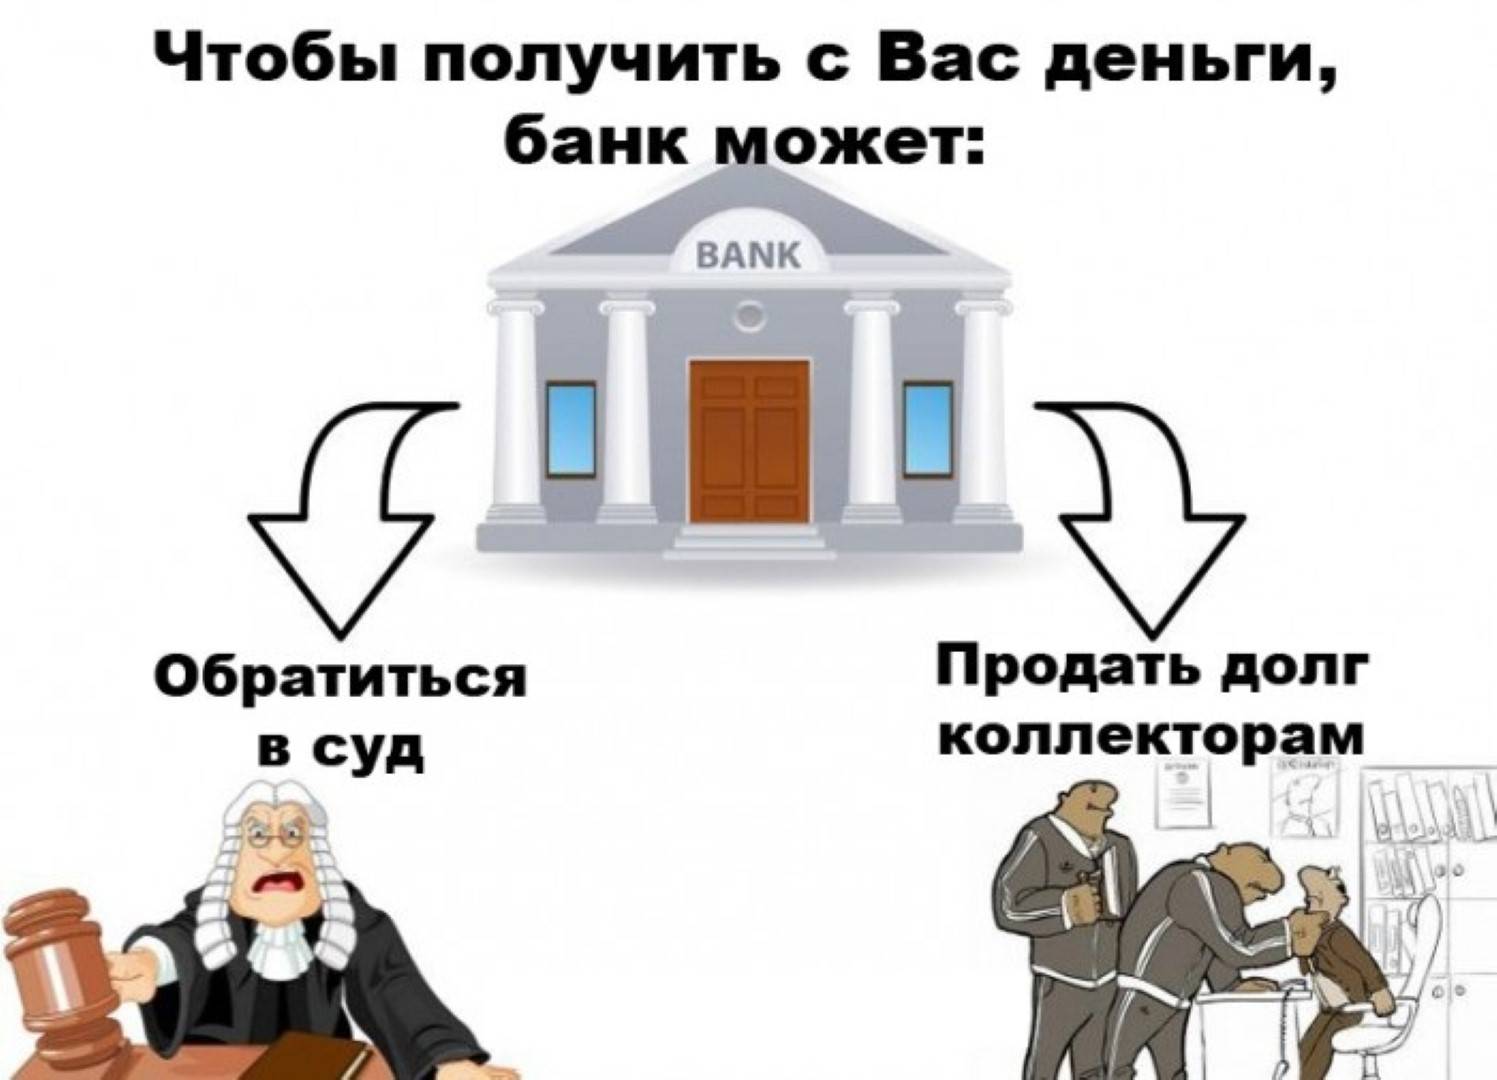 Когда банки передают долги коллекторам в россии, как это происходит